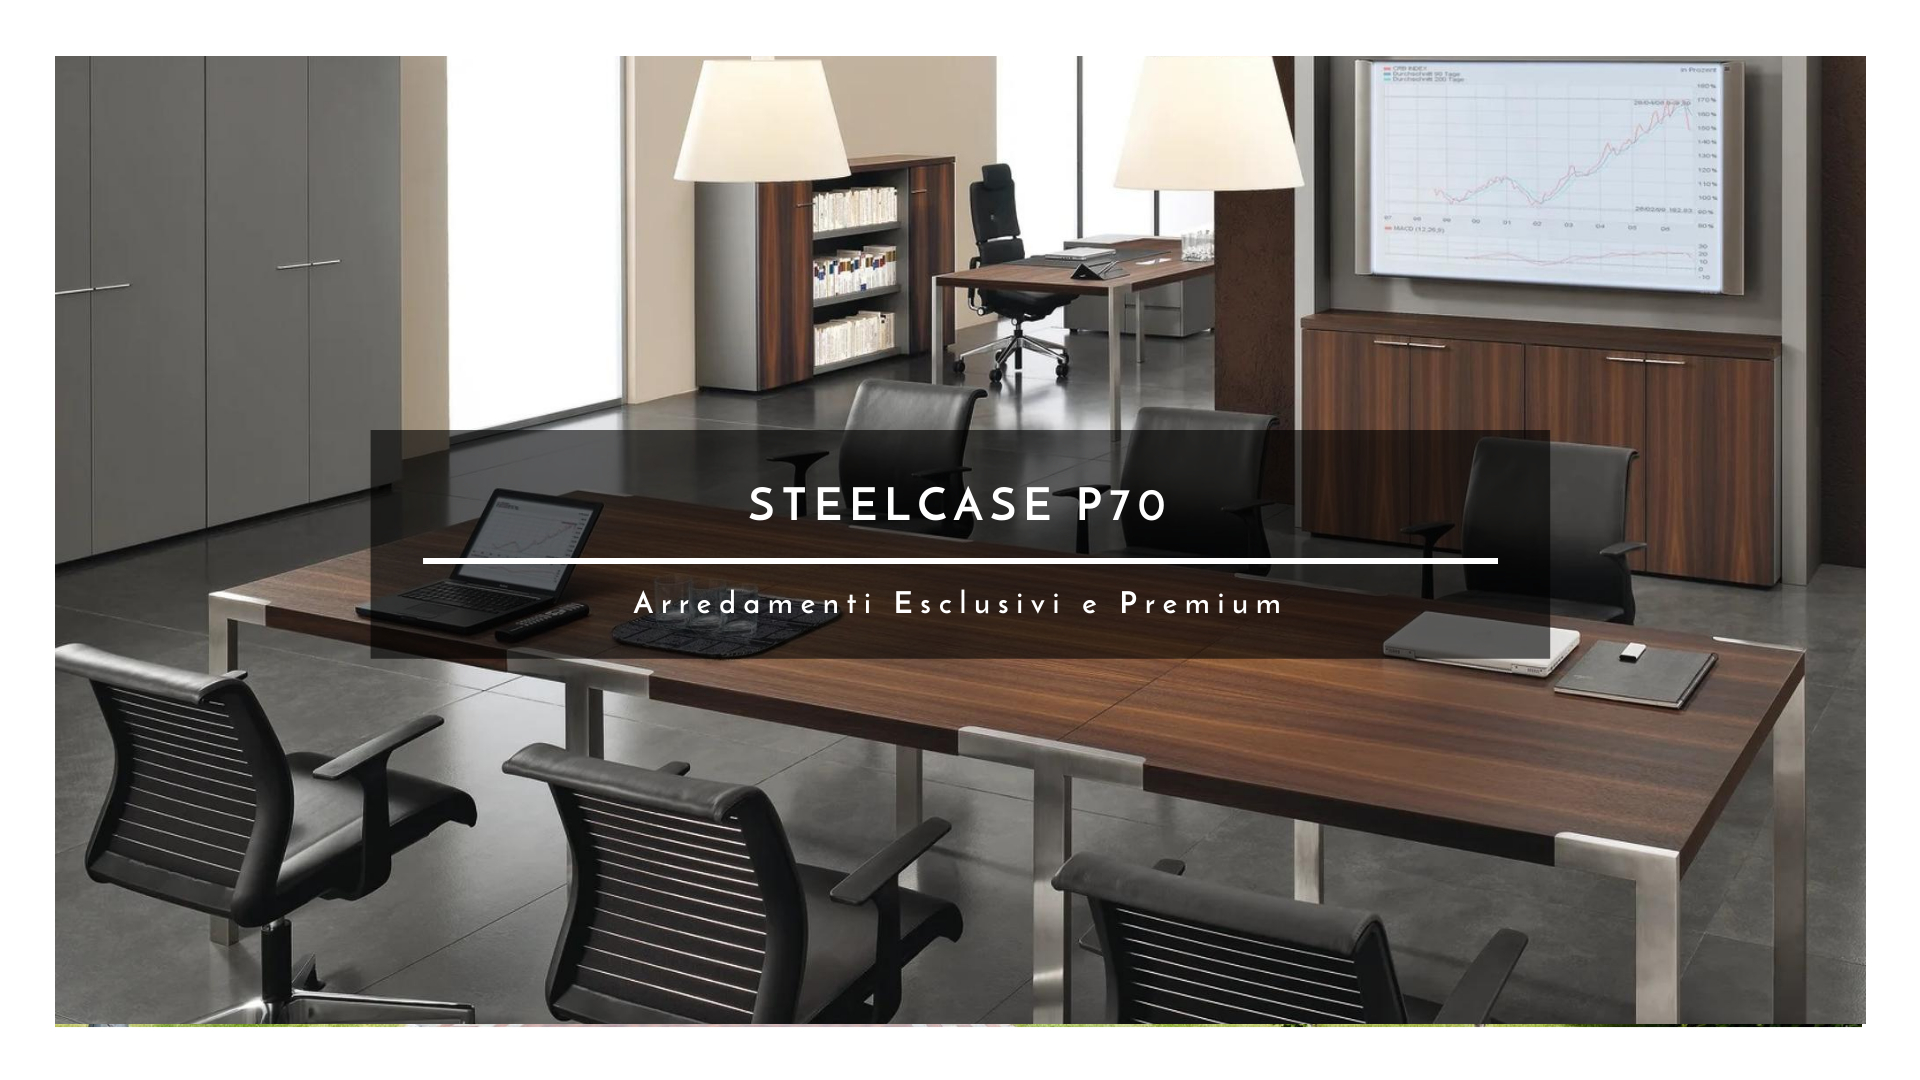 Steelcase P70 Arredamento esclusivo e di alta classe con materiali accuratamente selezionati